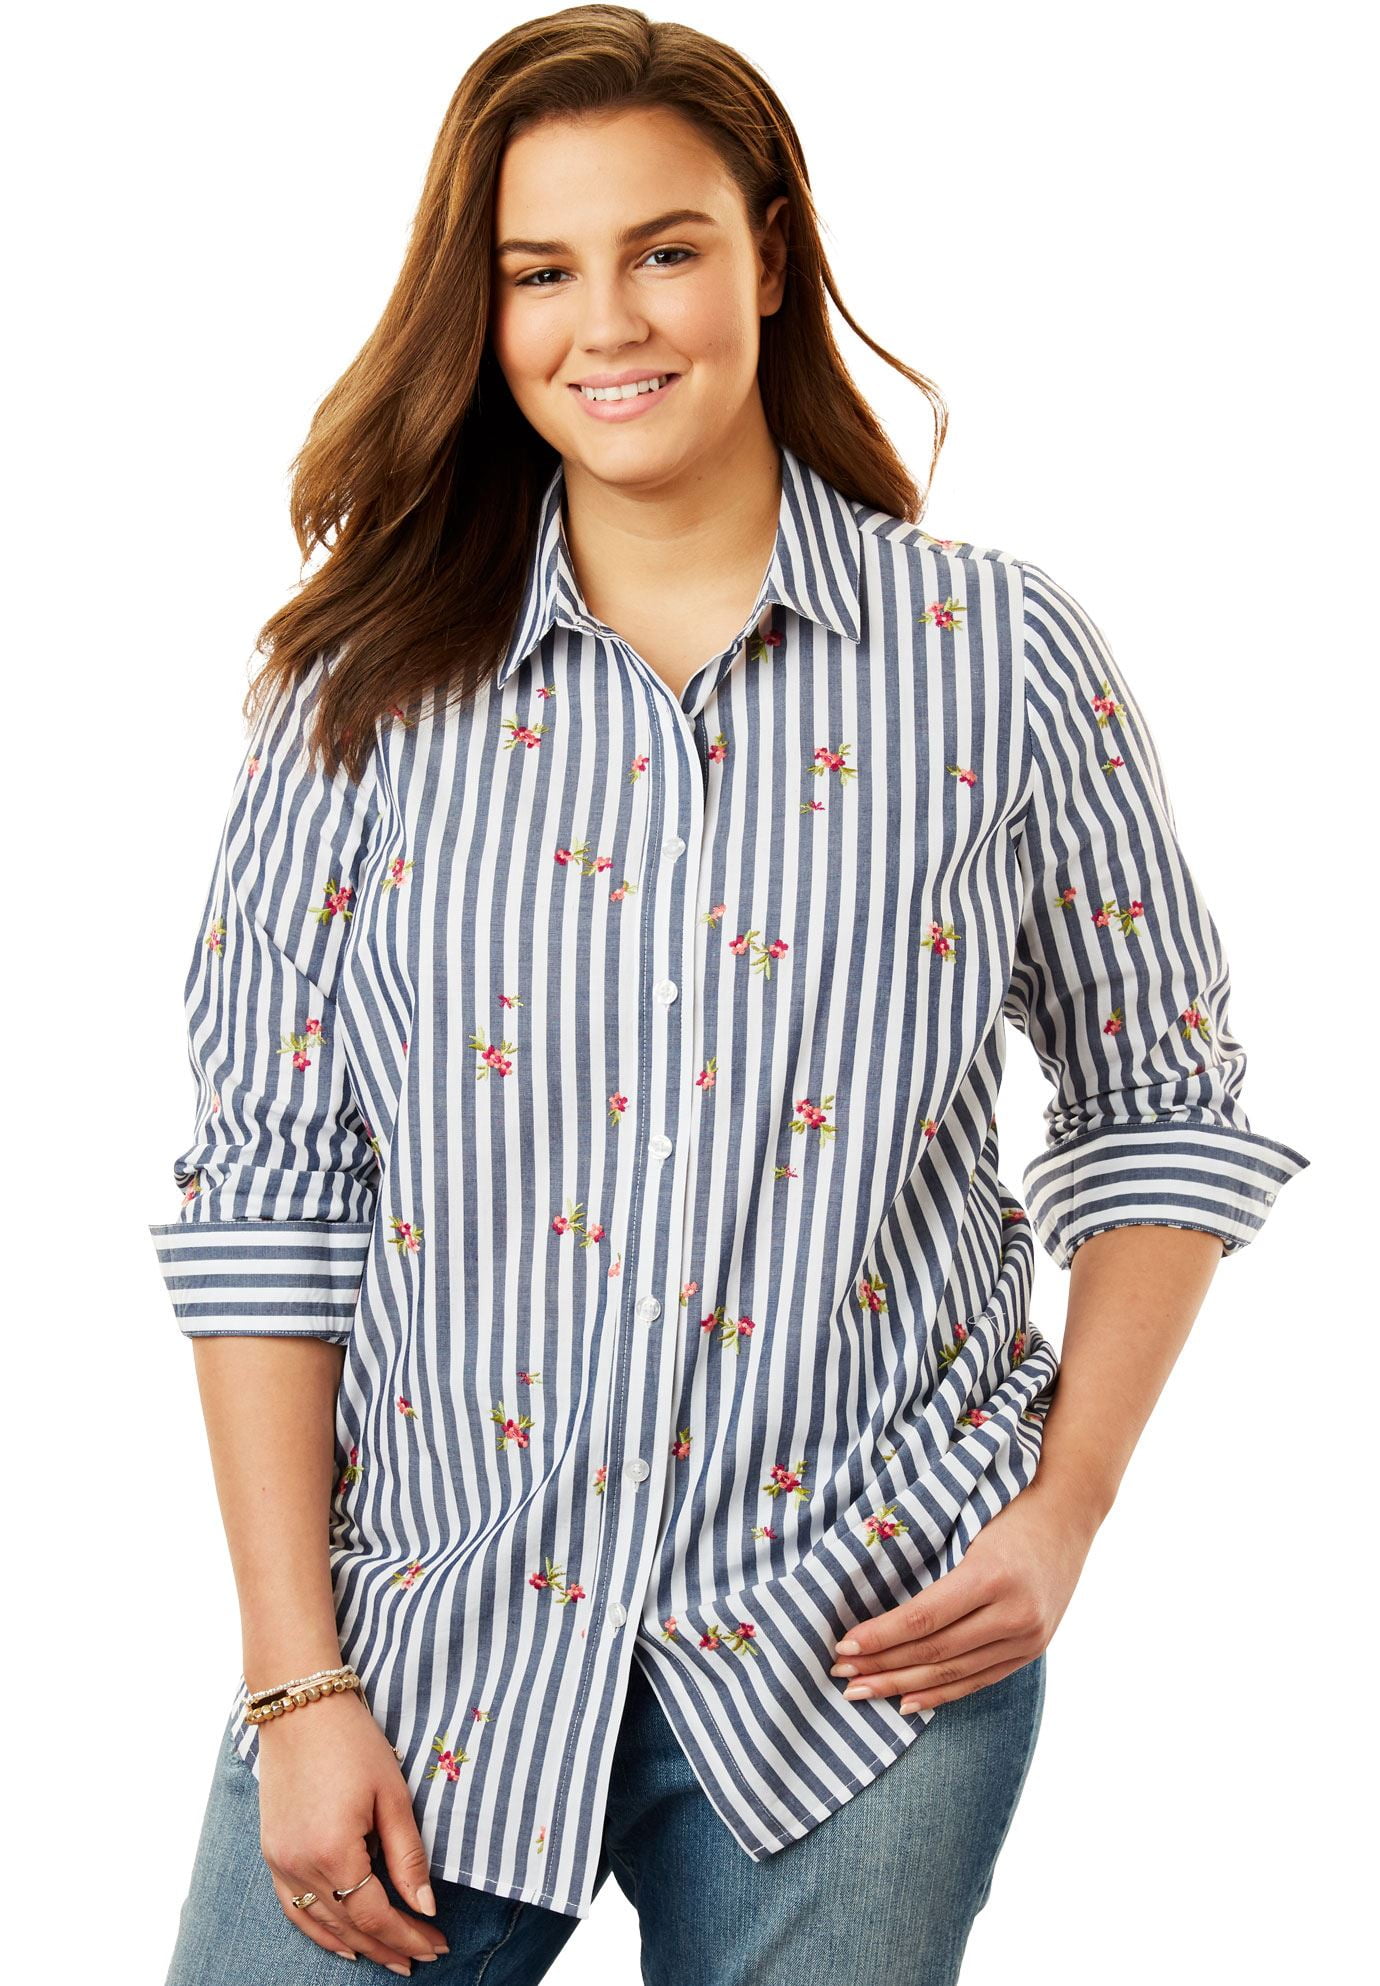 women's plus size button down dress shirts